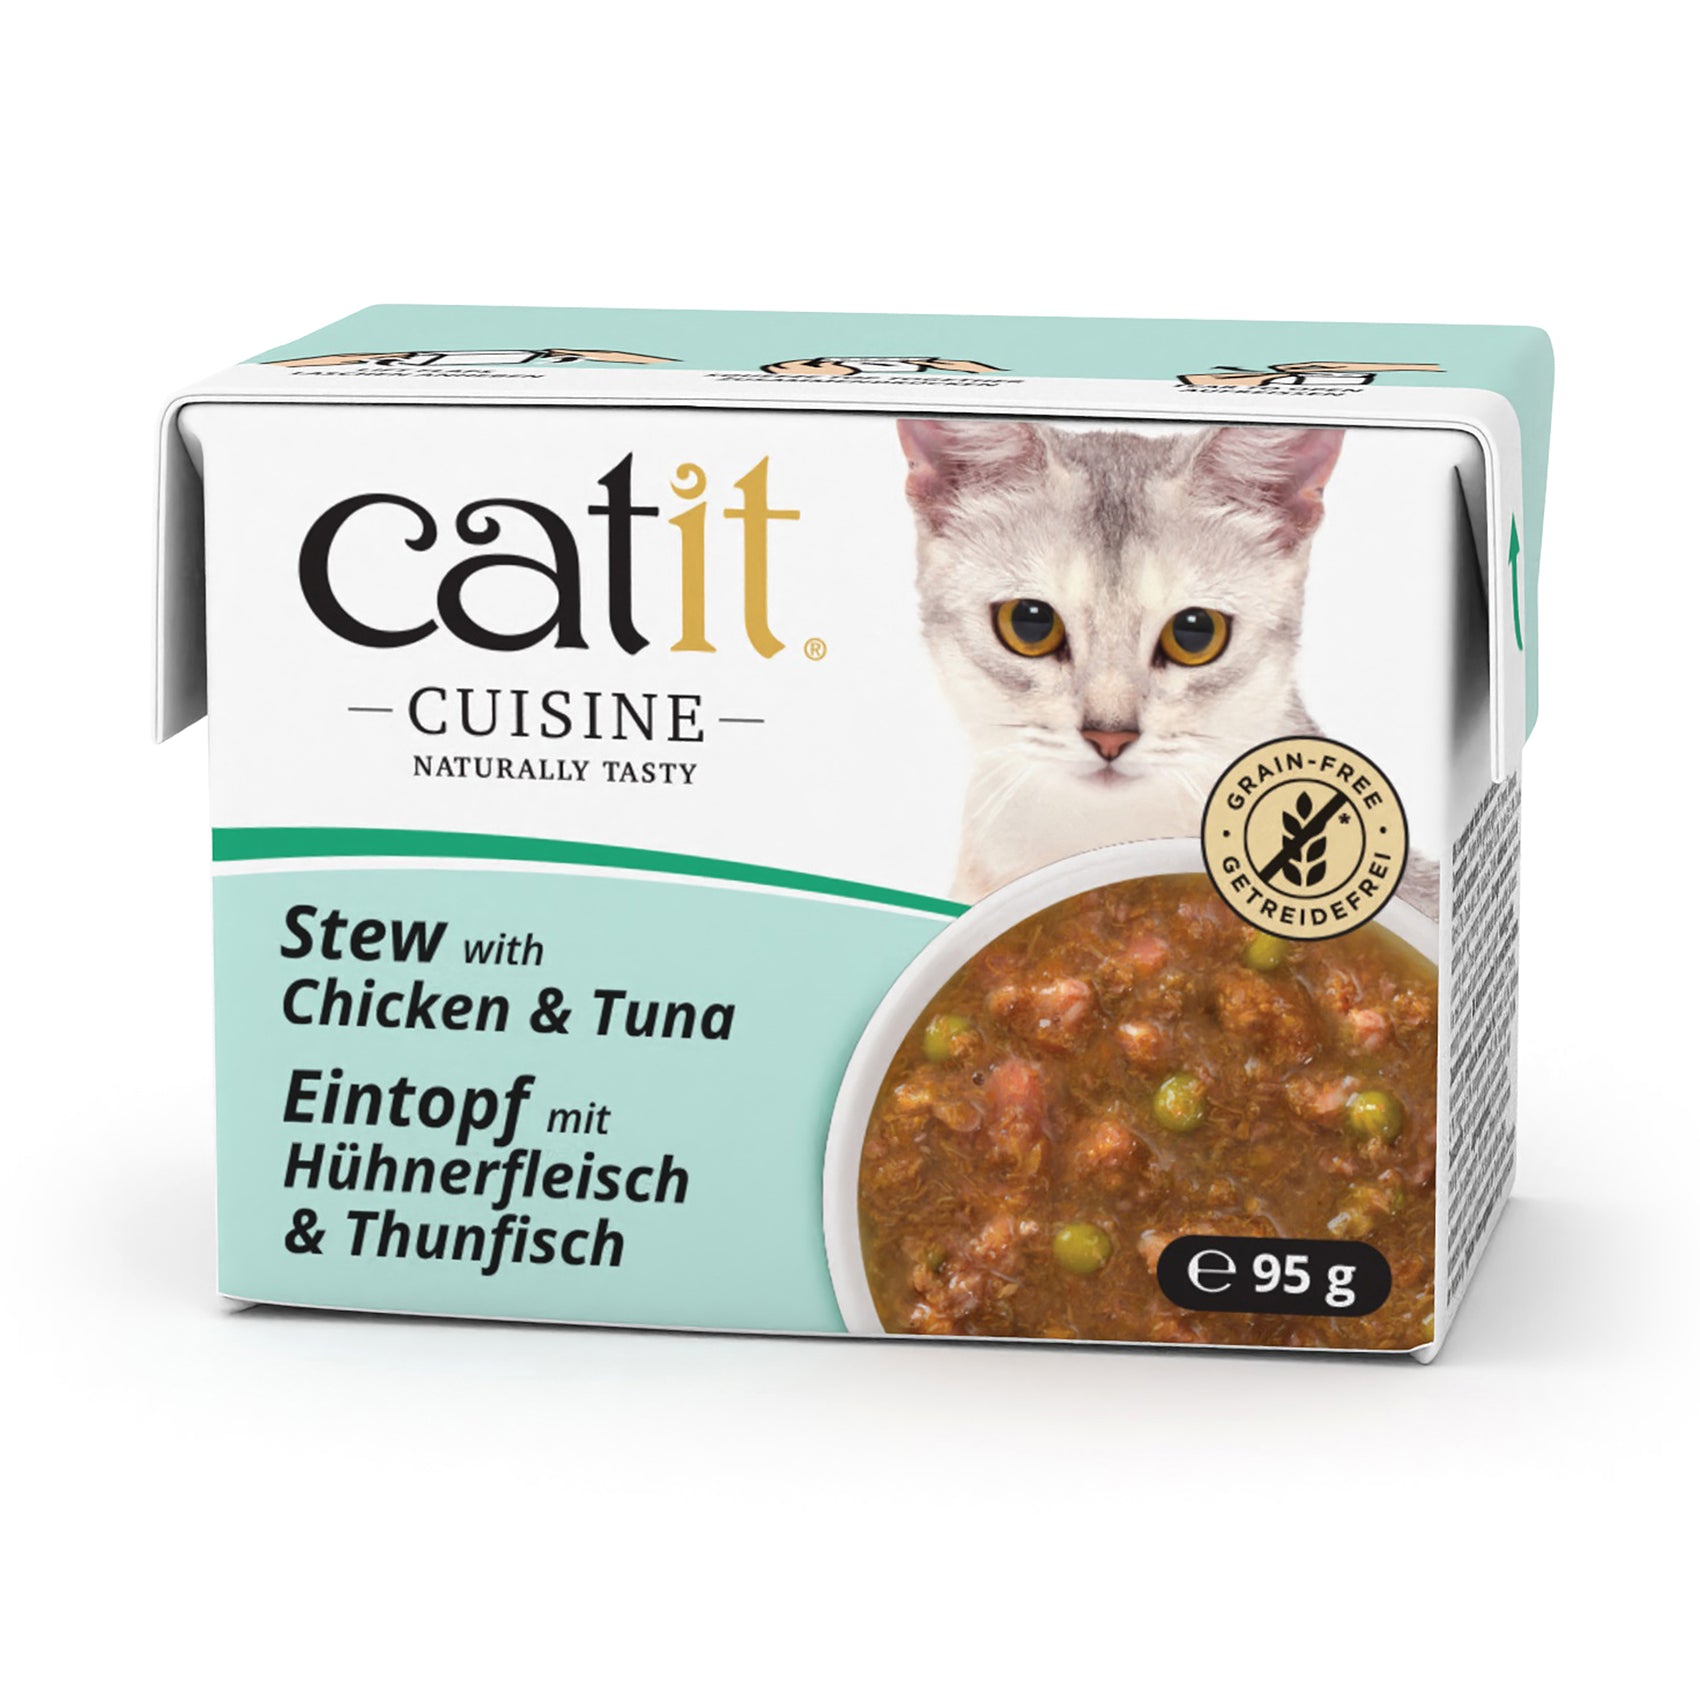 Catit Cuisine Cat Wet Food Chicken & Tuna Stew 95g